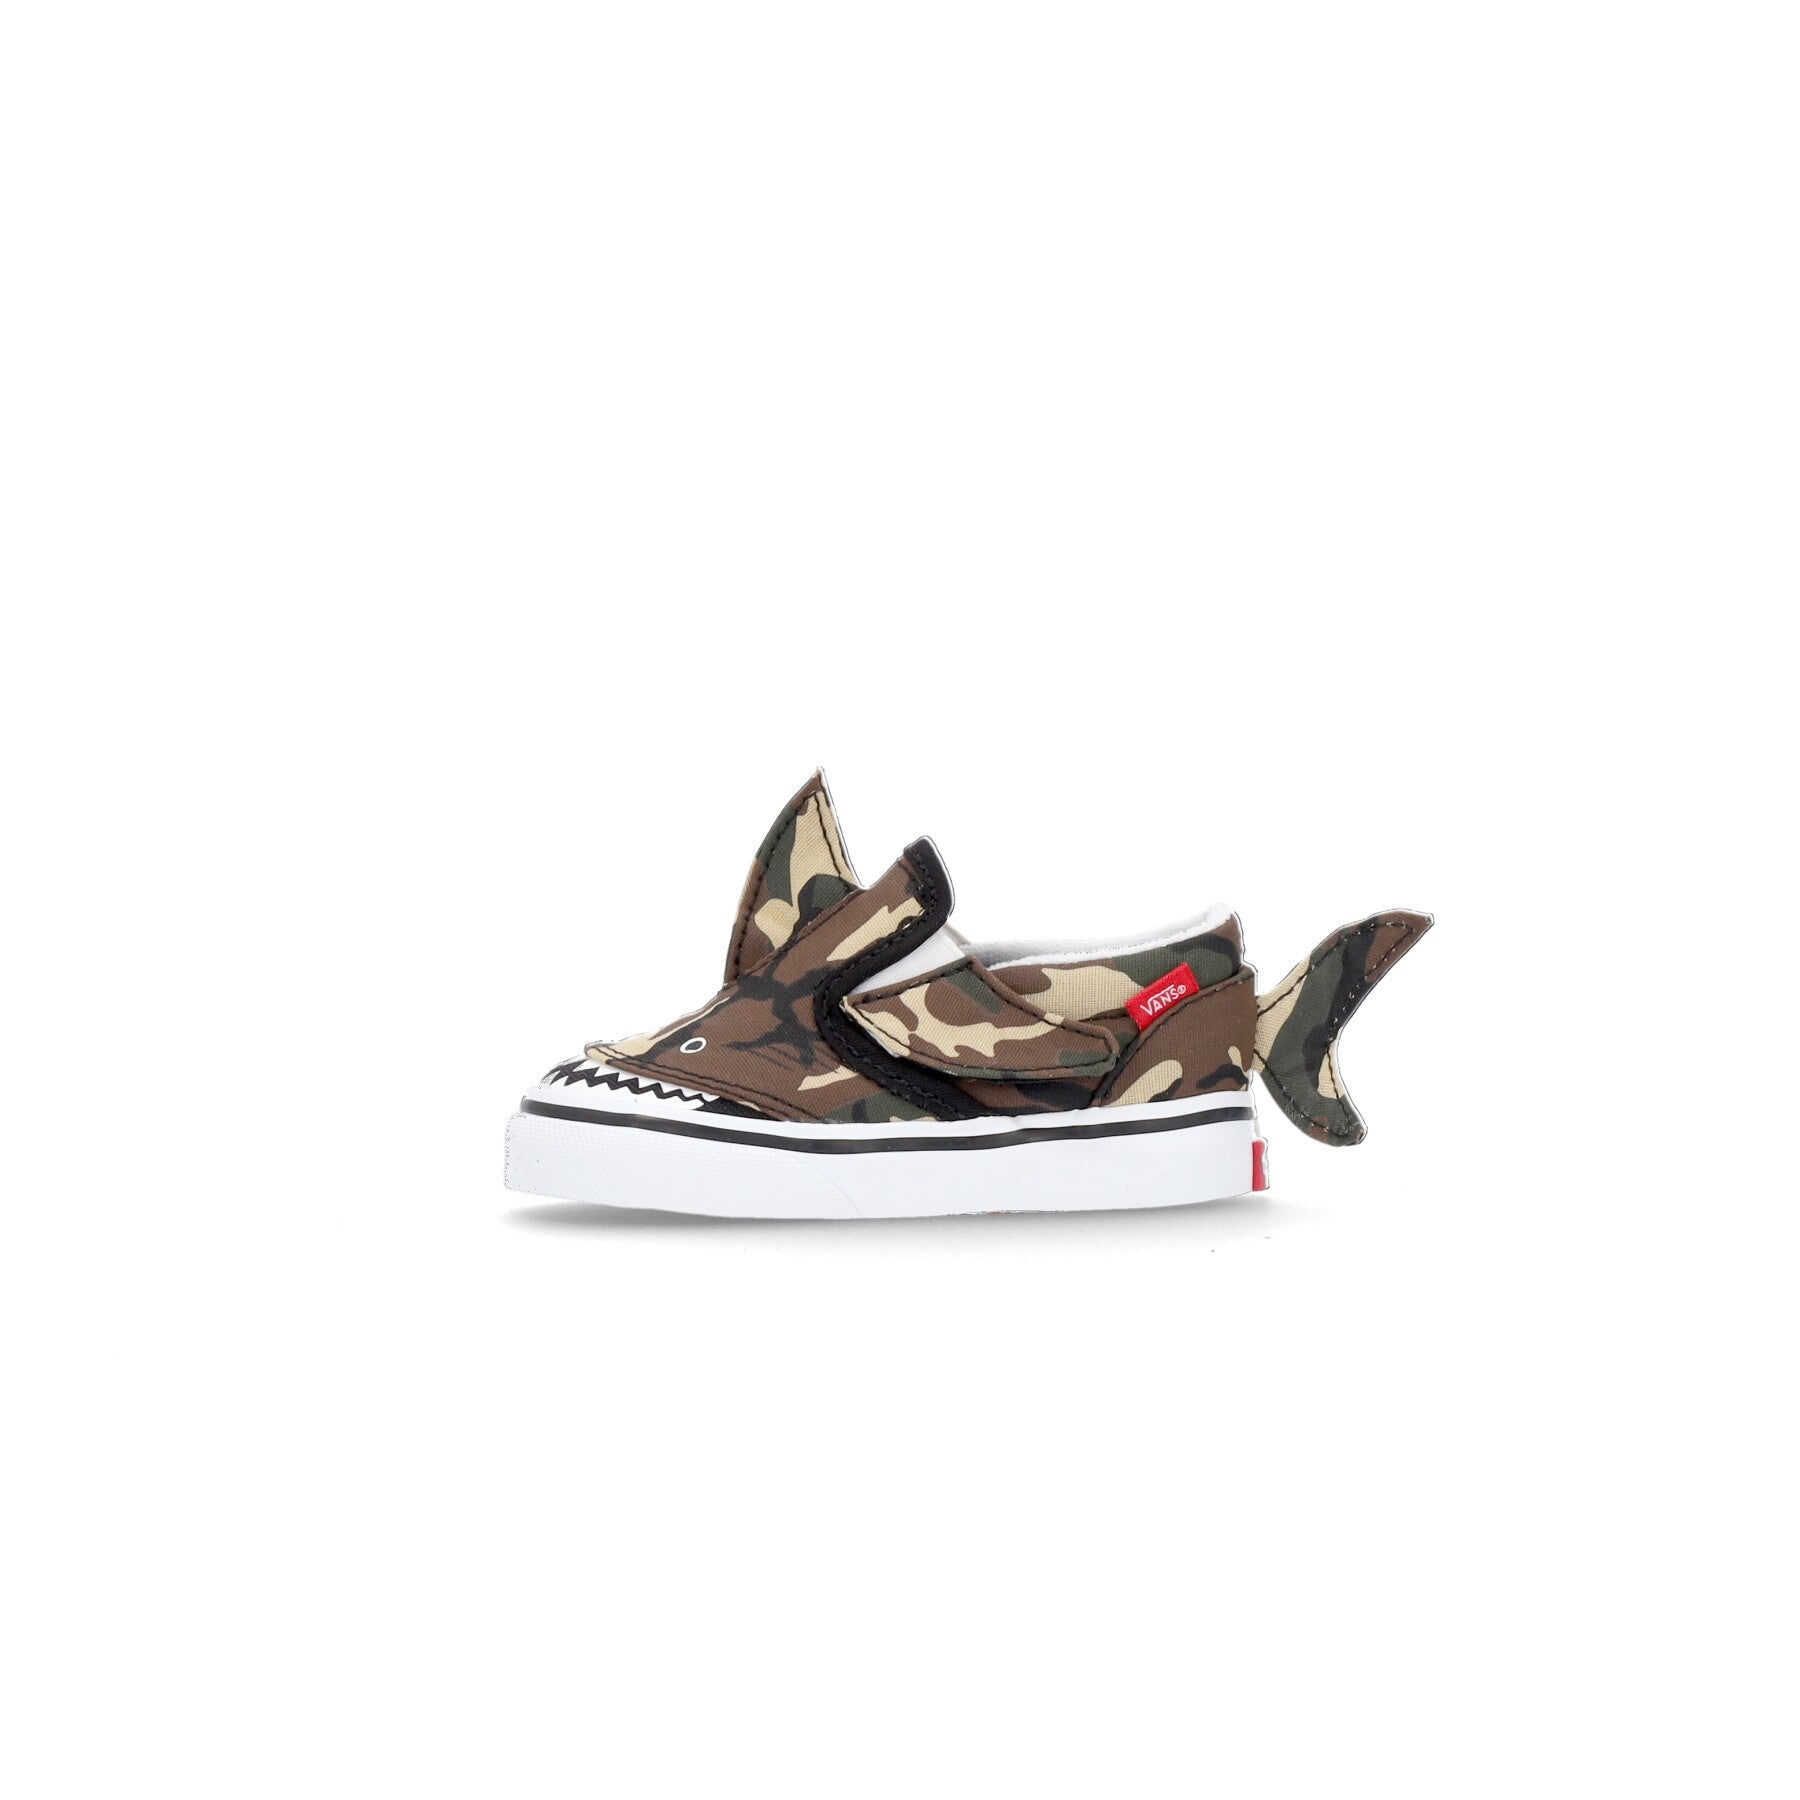 Low Slip-on Shoe for Children V Shark (camo Shark) Black/true White